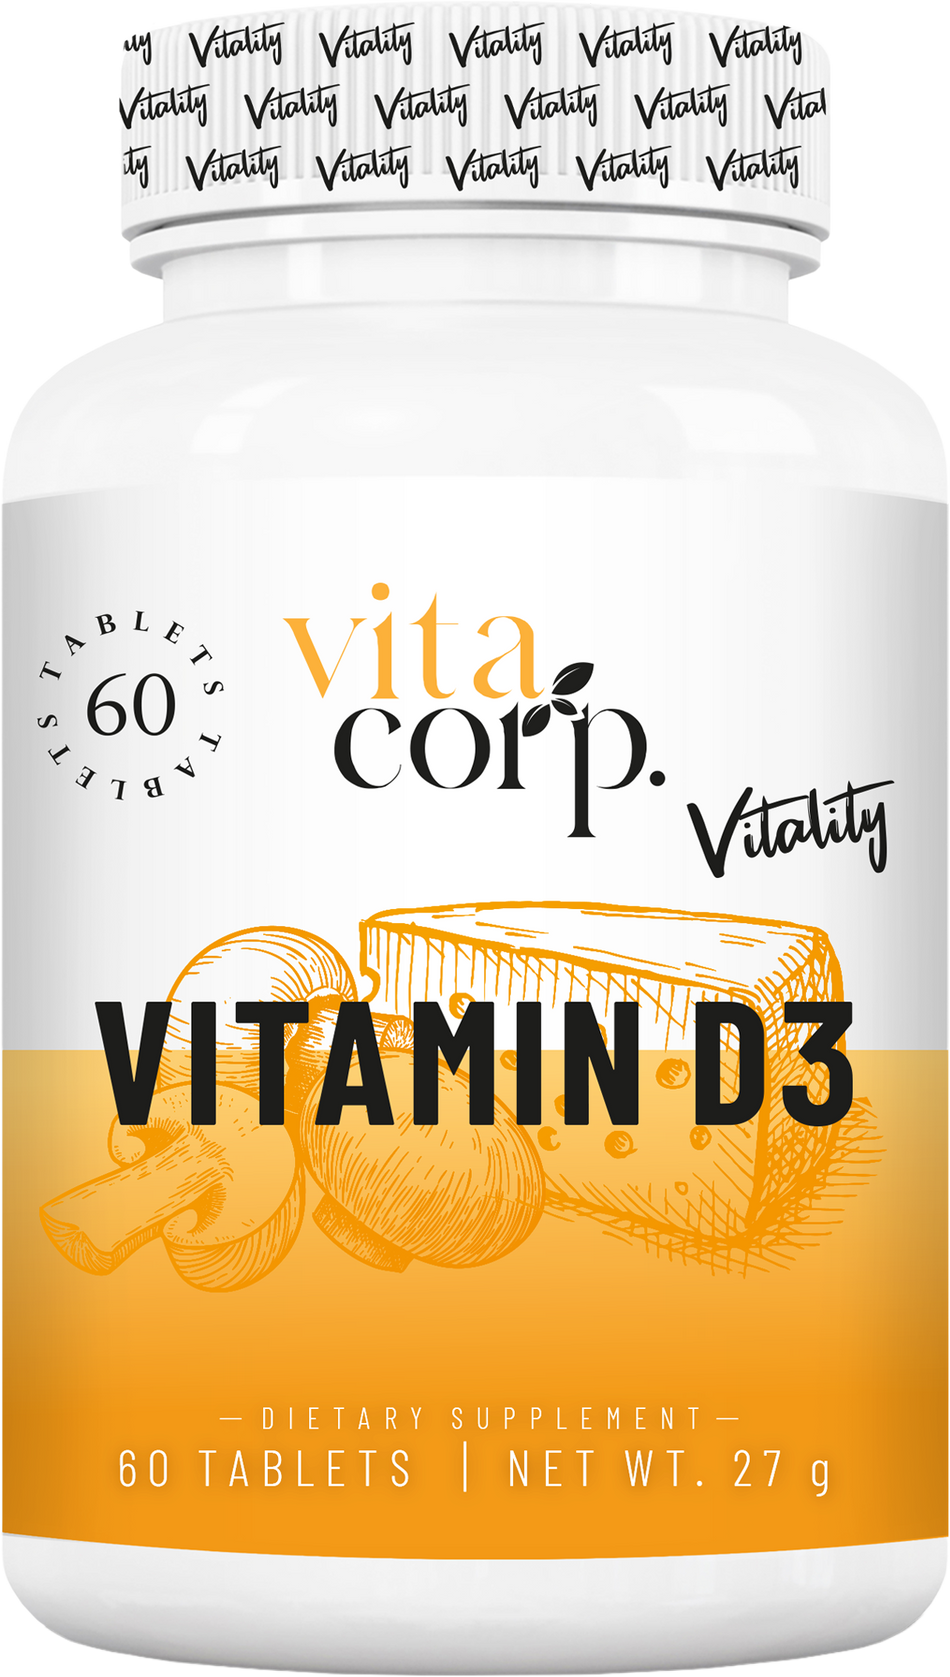 Vitamin D3 4000 IU - BadiZdrav.BG